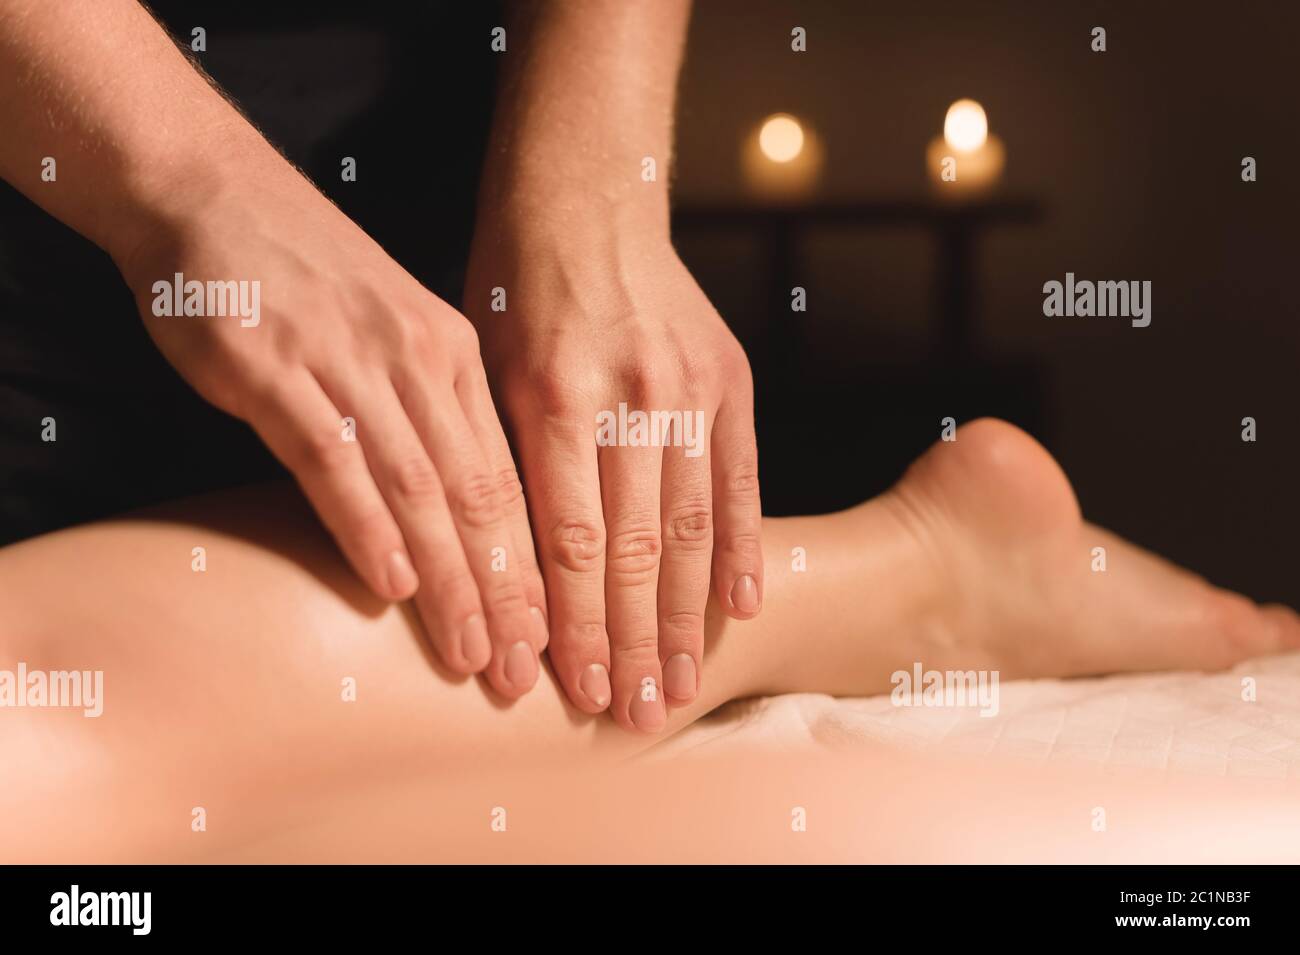 Nahaufnahme der männlichen Hände, die in einem dunklen Raum mit Kerzen im Hintergrund eine Kalbsmassage der weiblichen Beine machen. Kosmetologie und Spa Trea Stockfoto